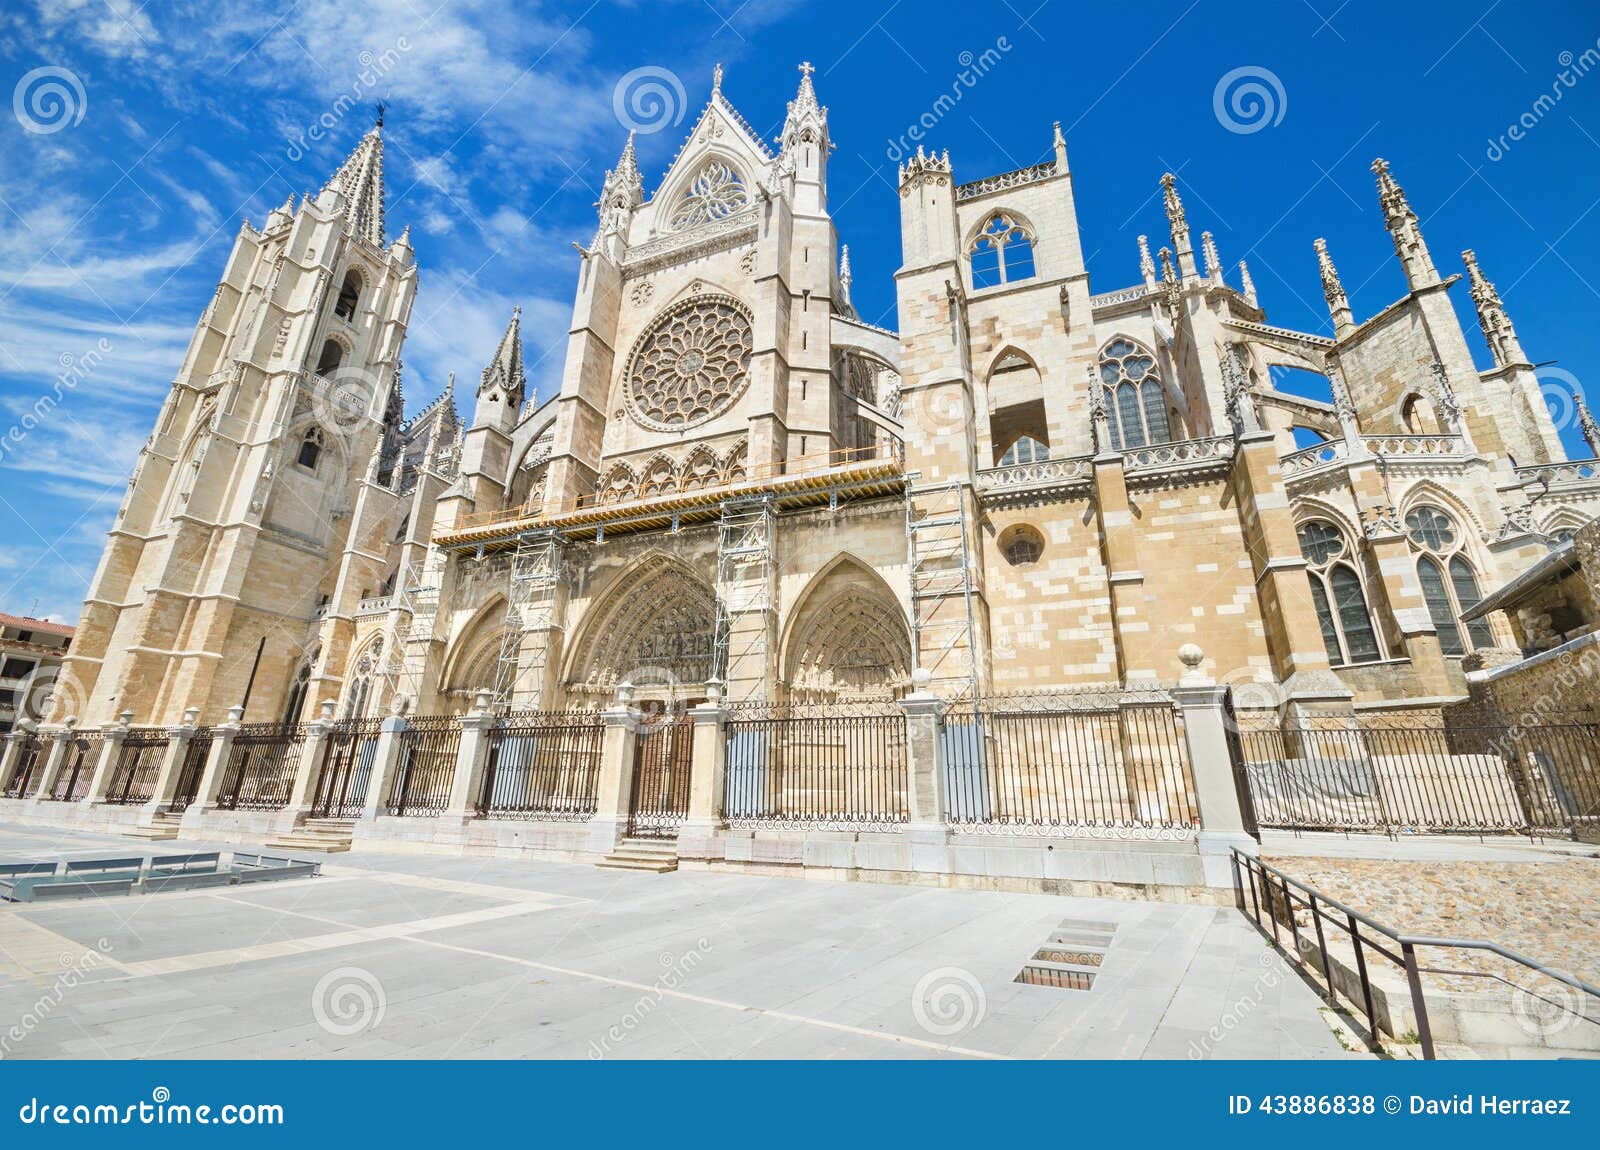 leon cathedral, castilla y leon, spain .